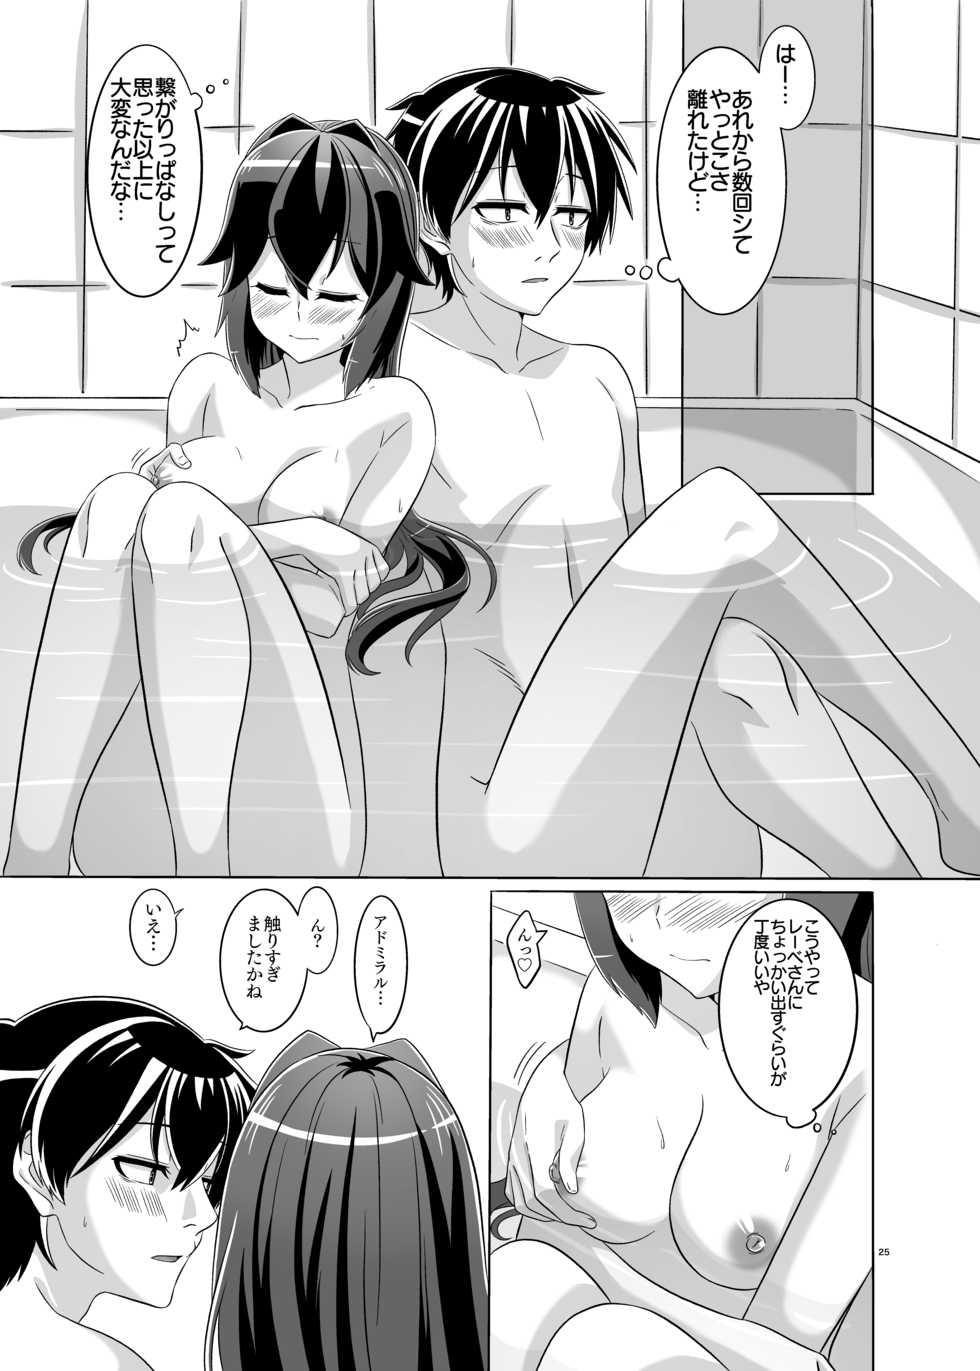 [Torutī-ya] Itsumo no yoru futari no yotogi 2 (Warship Girls R) - Page 26